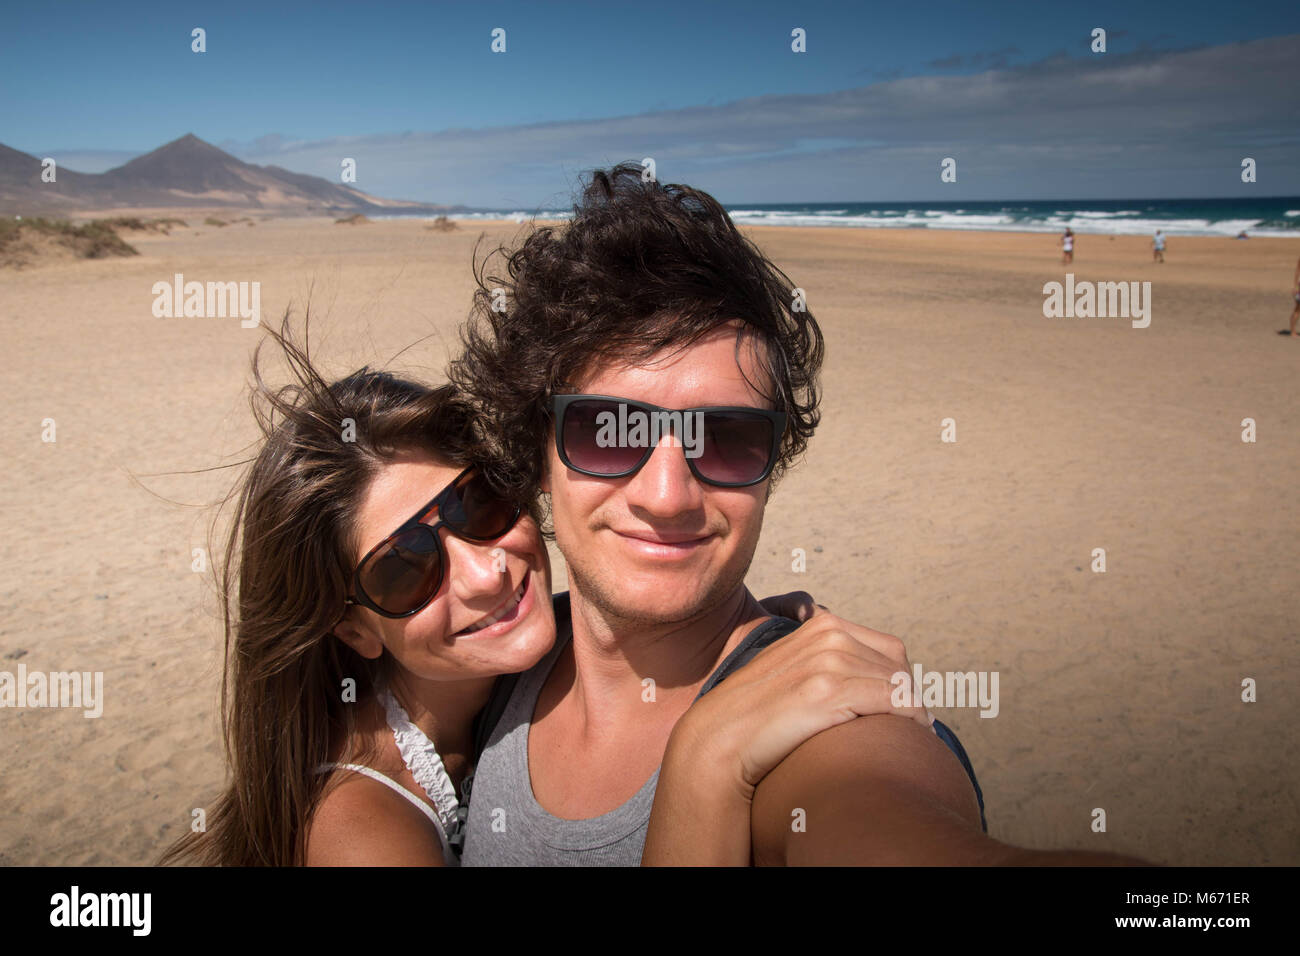 Feliz abrazando pareja joven retrato en la playa. Medio cercano con fondo escénico. Fuerteventura, Islas Canarias, España. Foto de stock